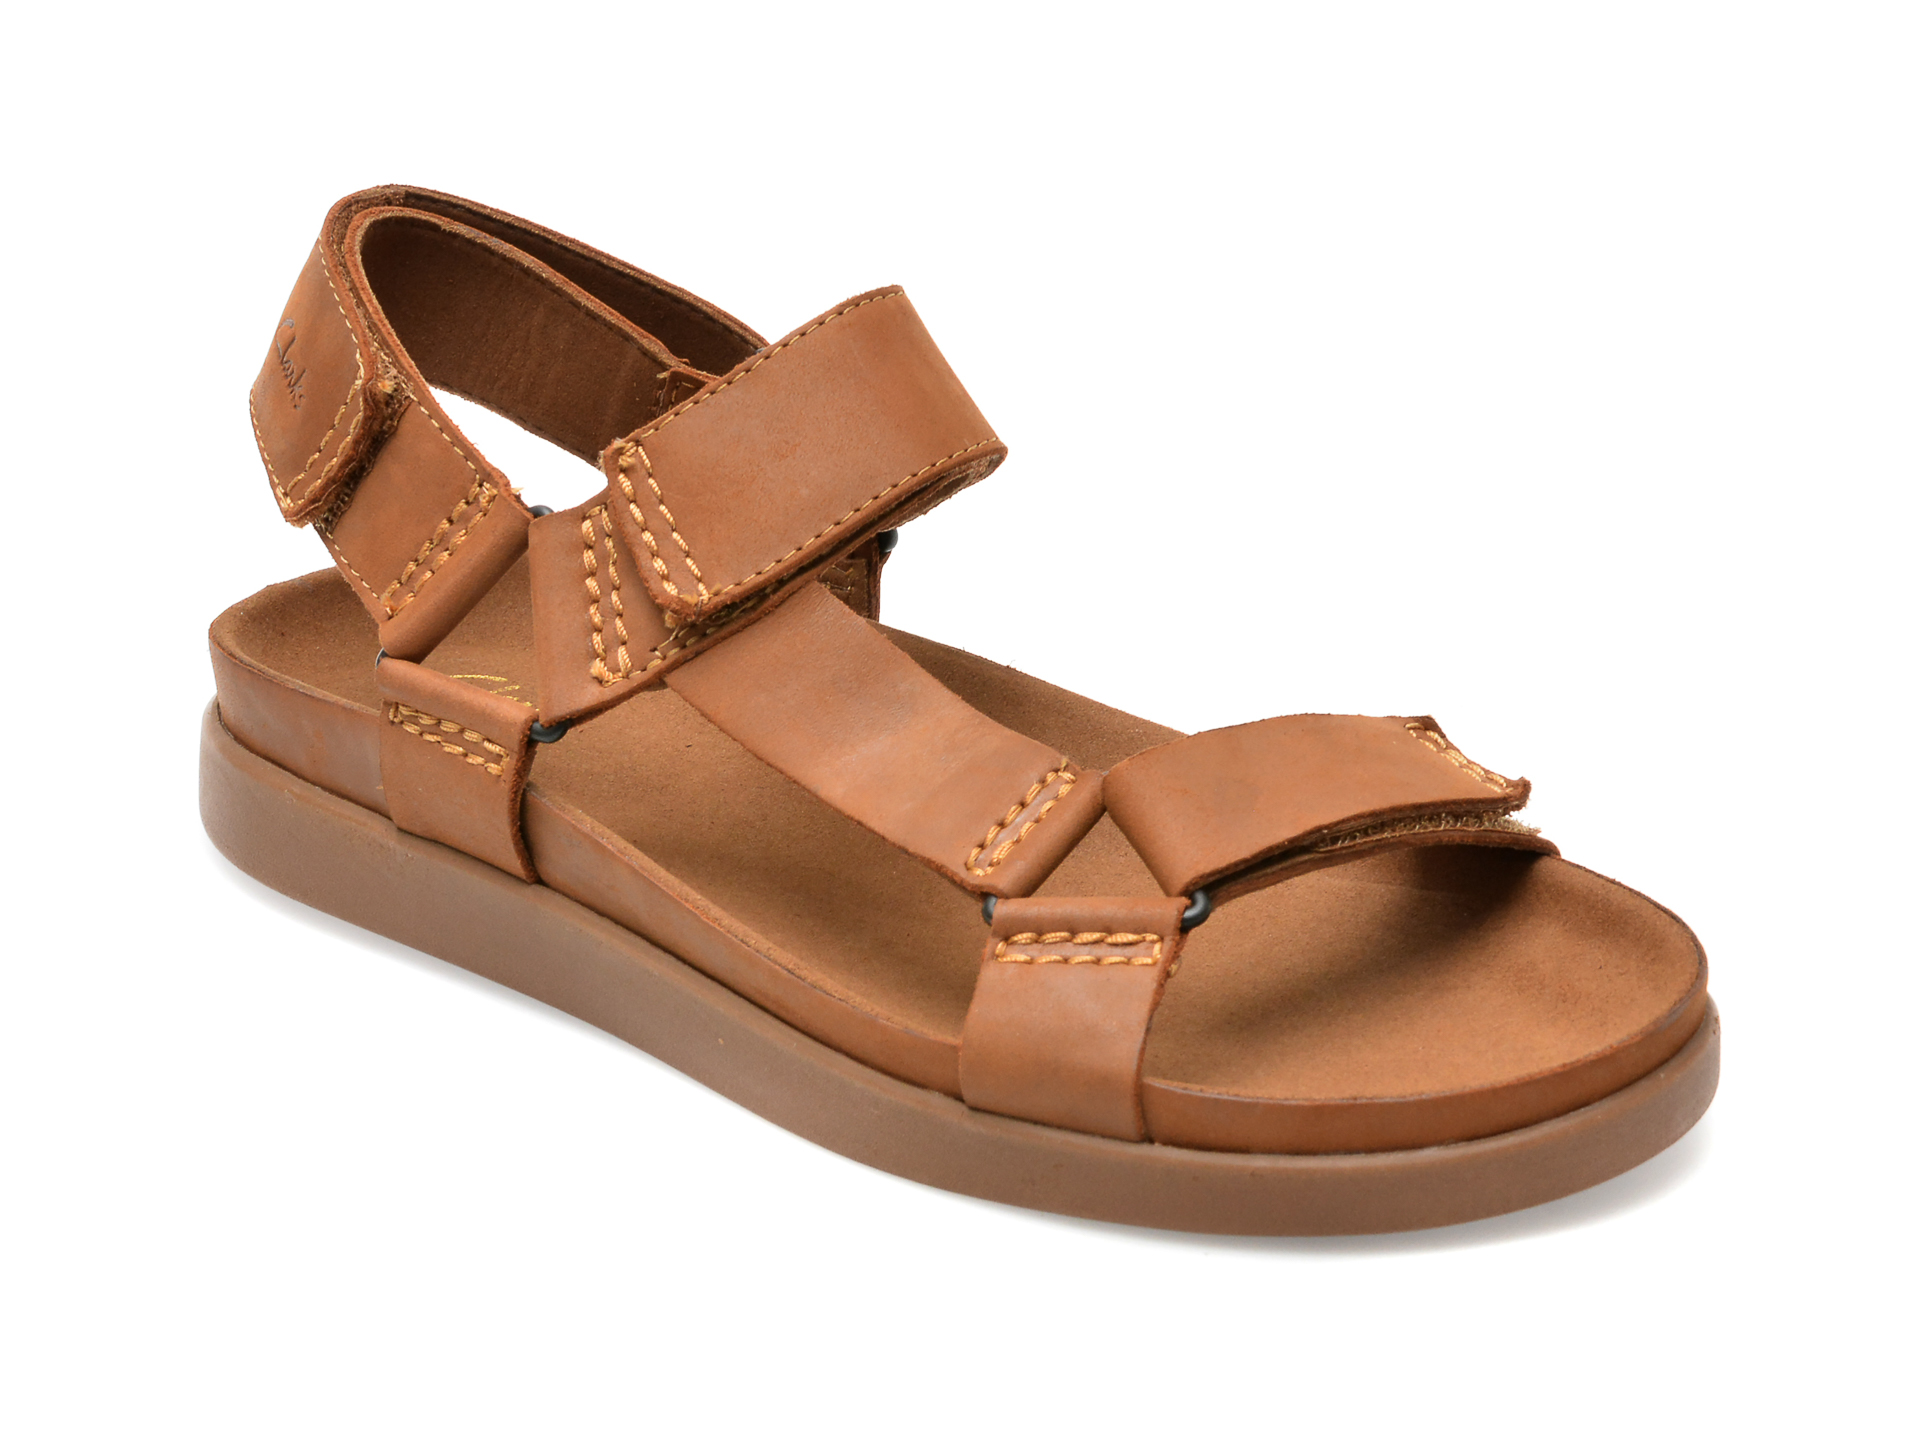 Sandale CLARKS maro, SUNDER RANGE 16-N, din piele naturala barbati 2023-03-21